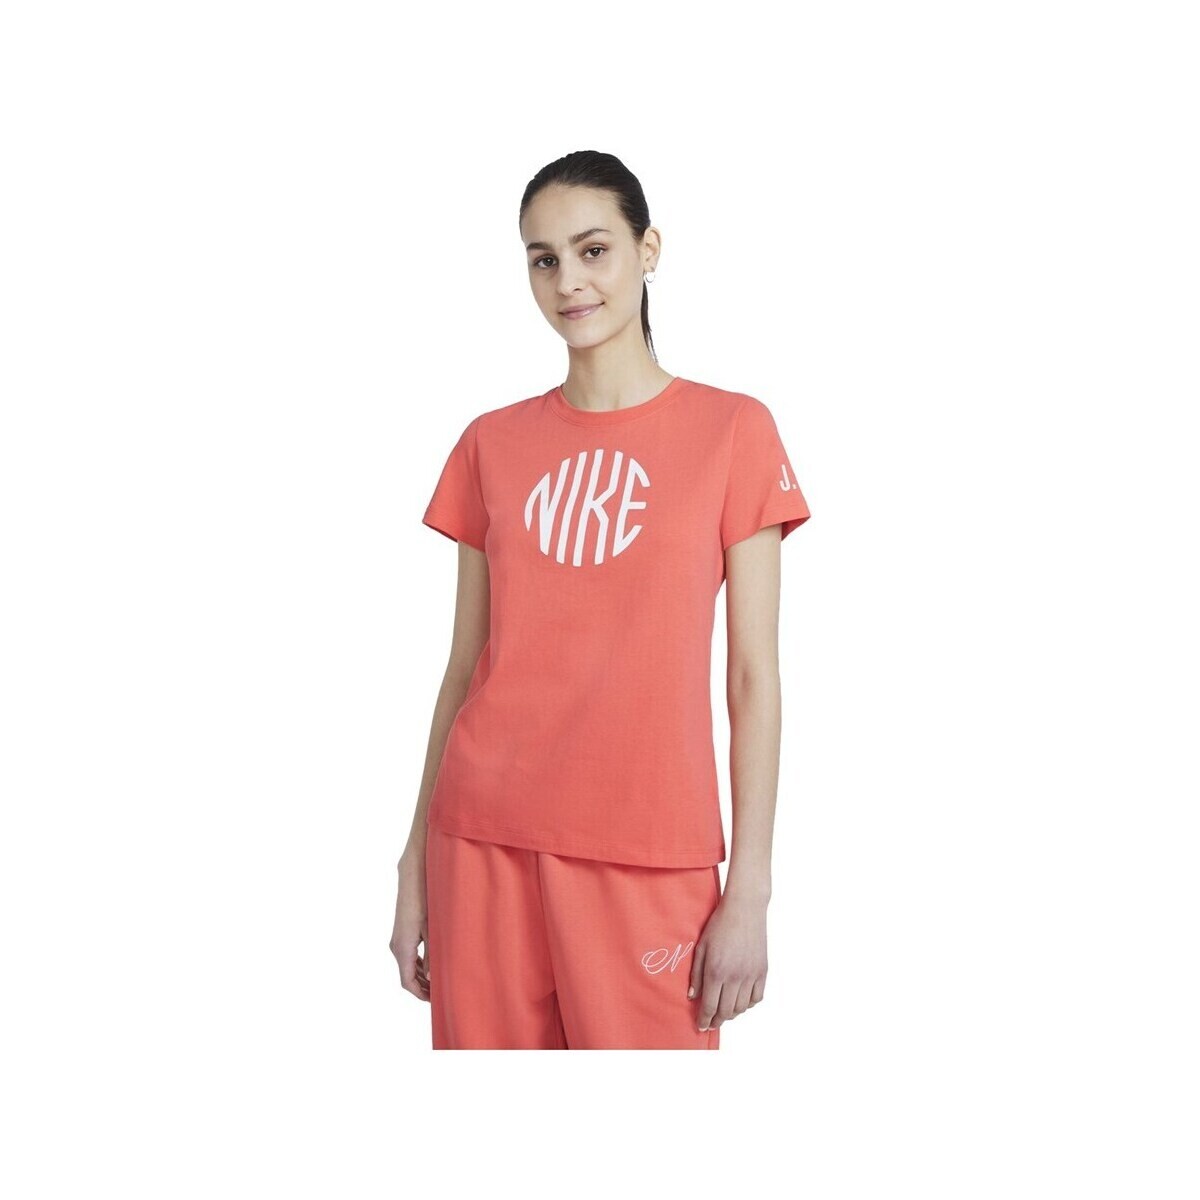 Îmbracaminte Femei Tricouri mânecă scurtă Nike Logo portocaliu